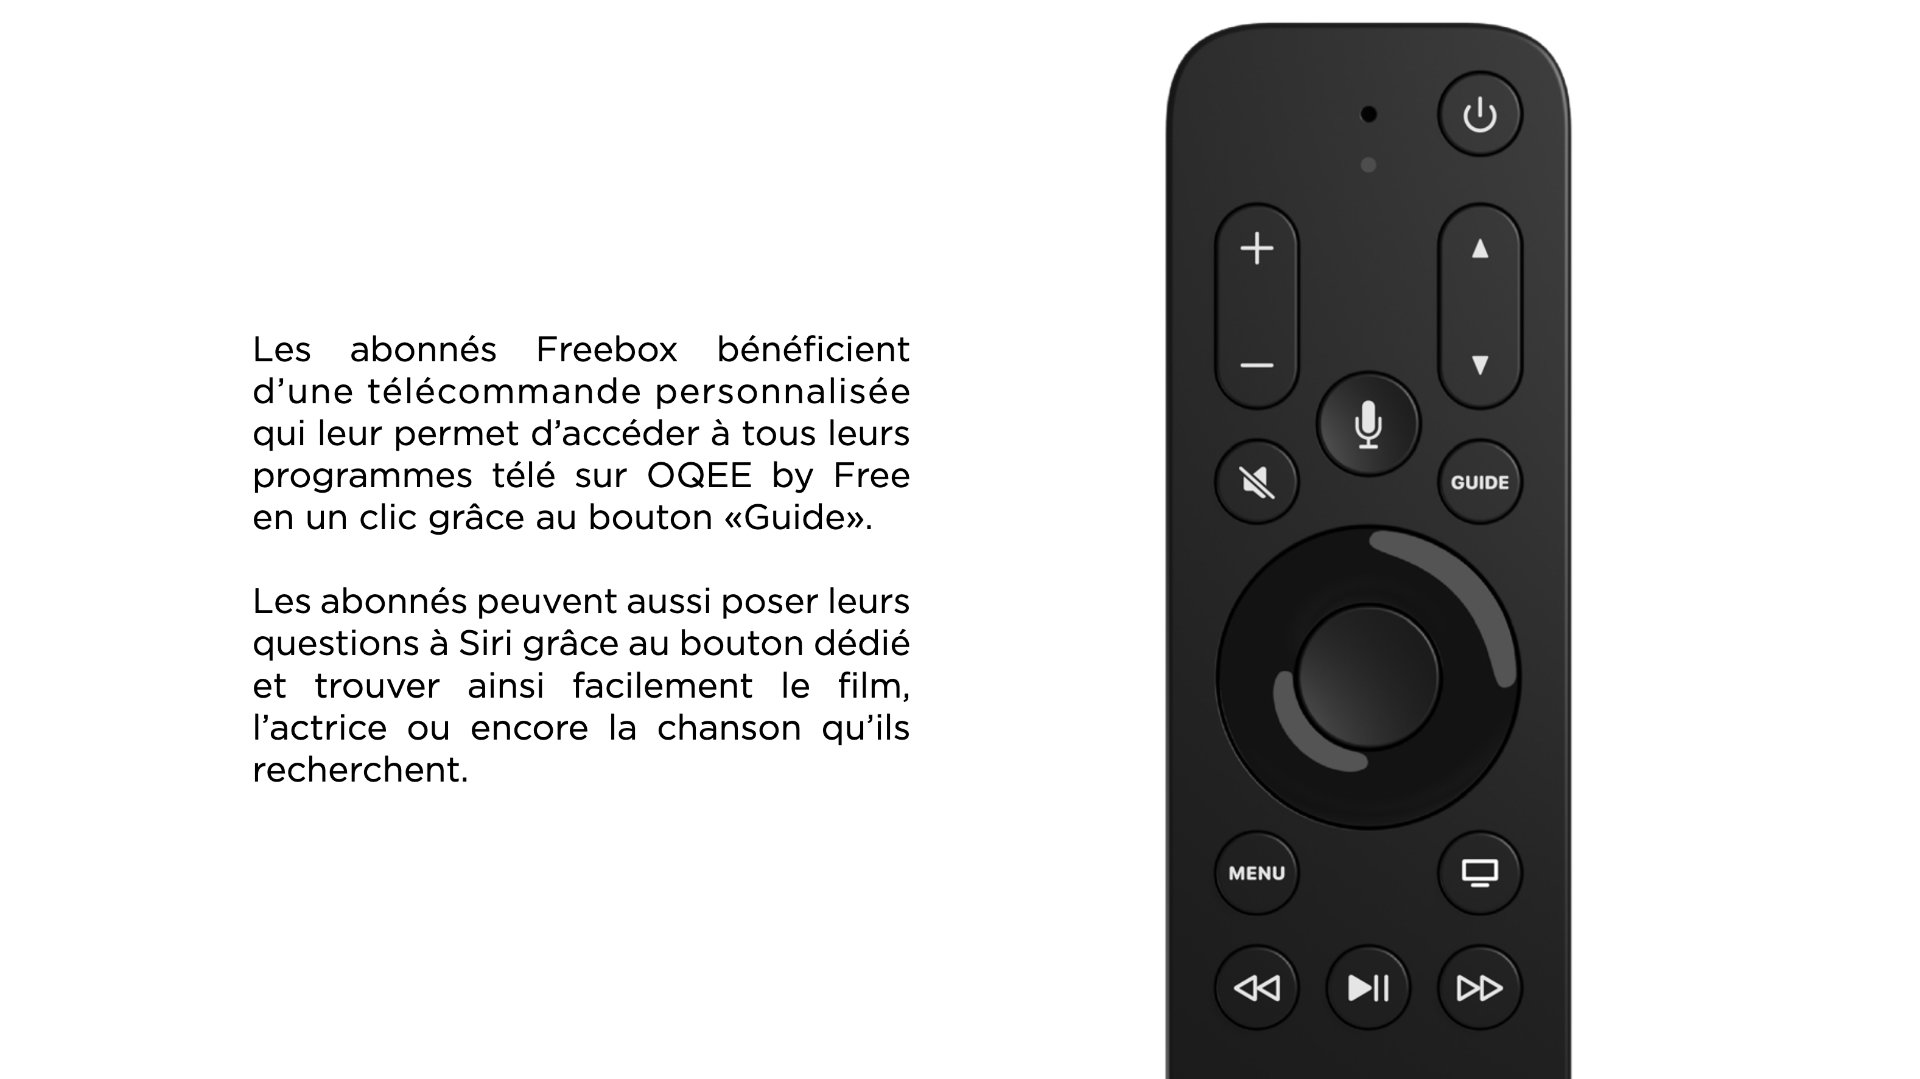 Avec l'Apple TV 4K, Free propose un choix de box TV plus adapté aux clients  Apple - Numerama